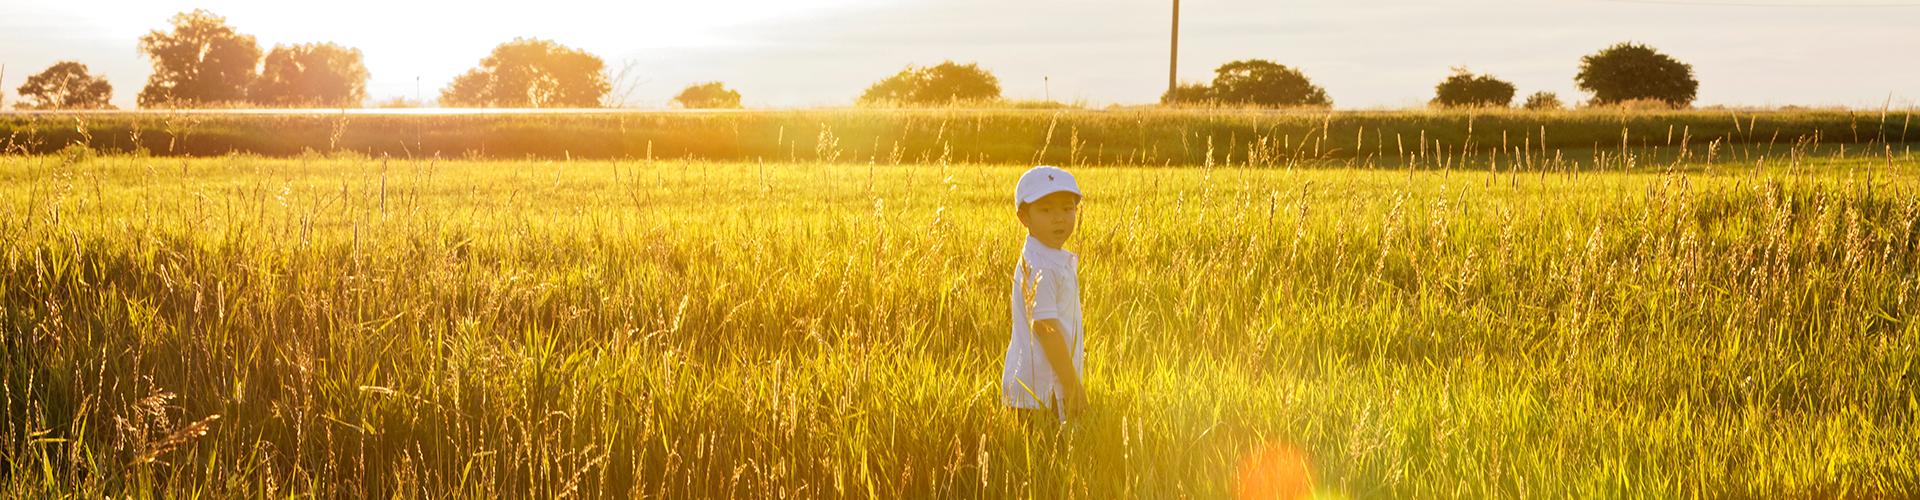 Three-year-old son Valentin running through a golden field